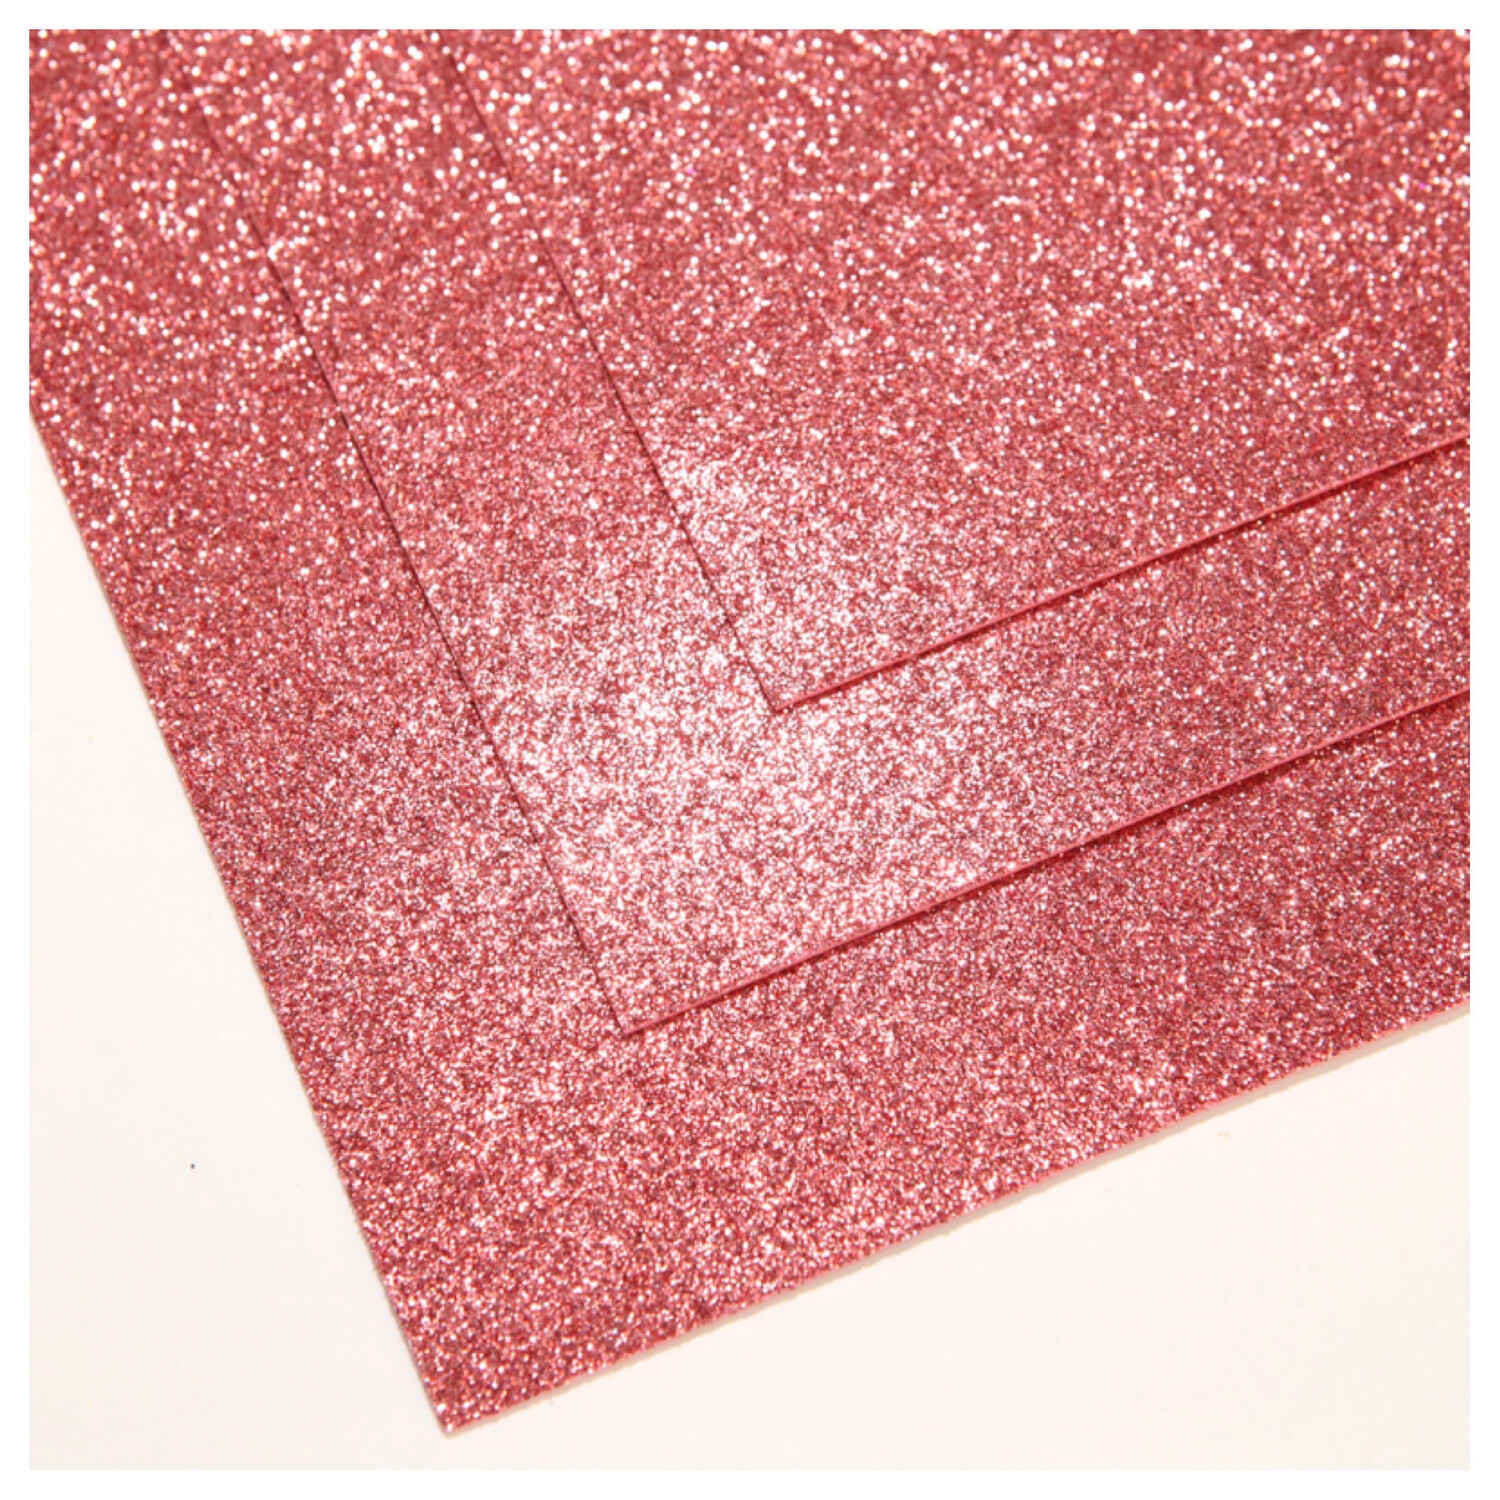 Фоамиран глиттерный - толщина 1,5 мм , размер листа 60/70 см.
Цвет -  тёплый розовый